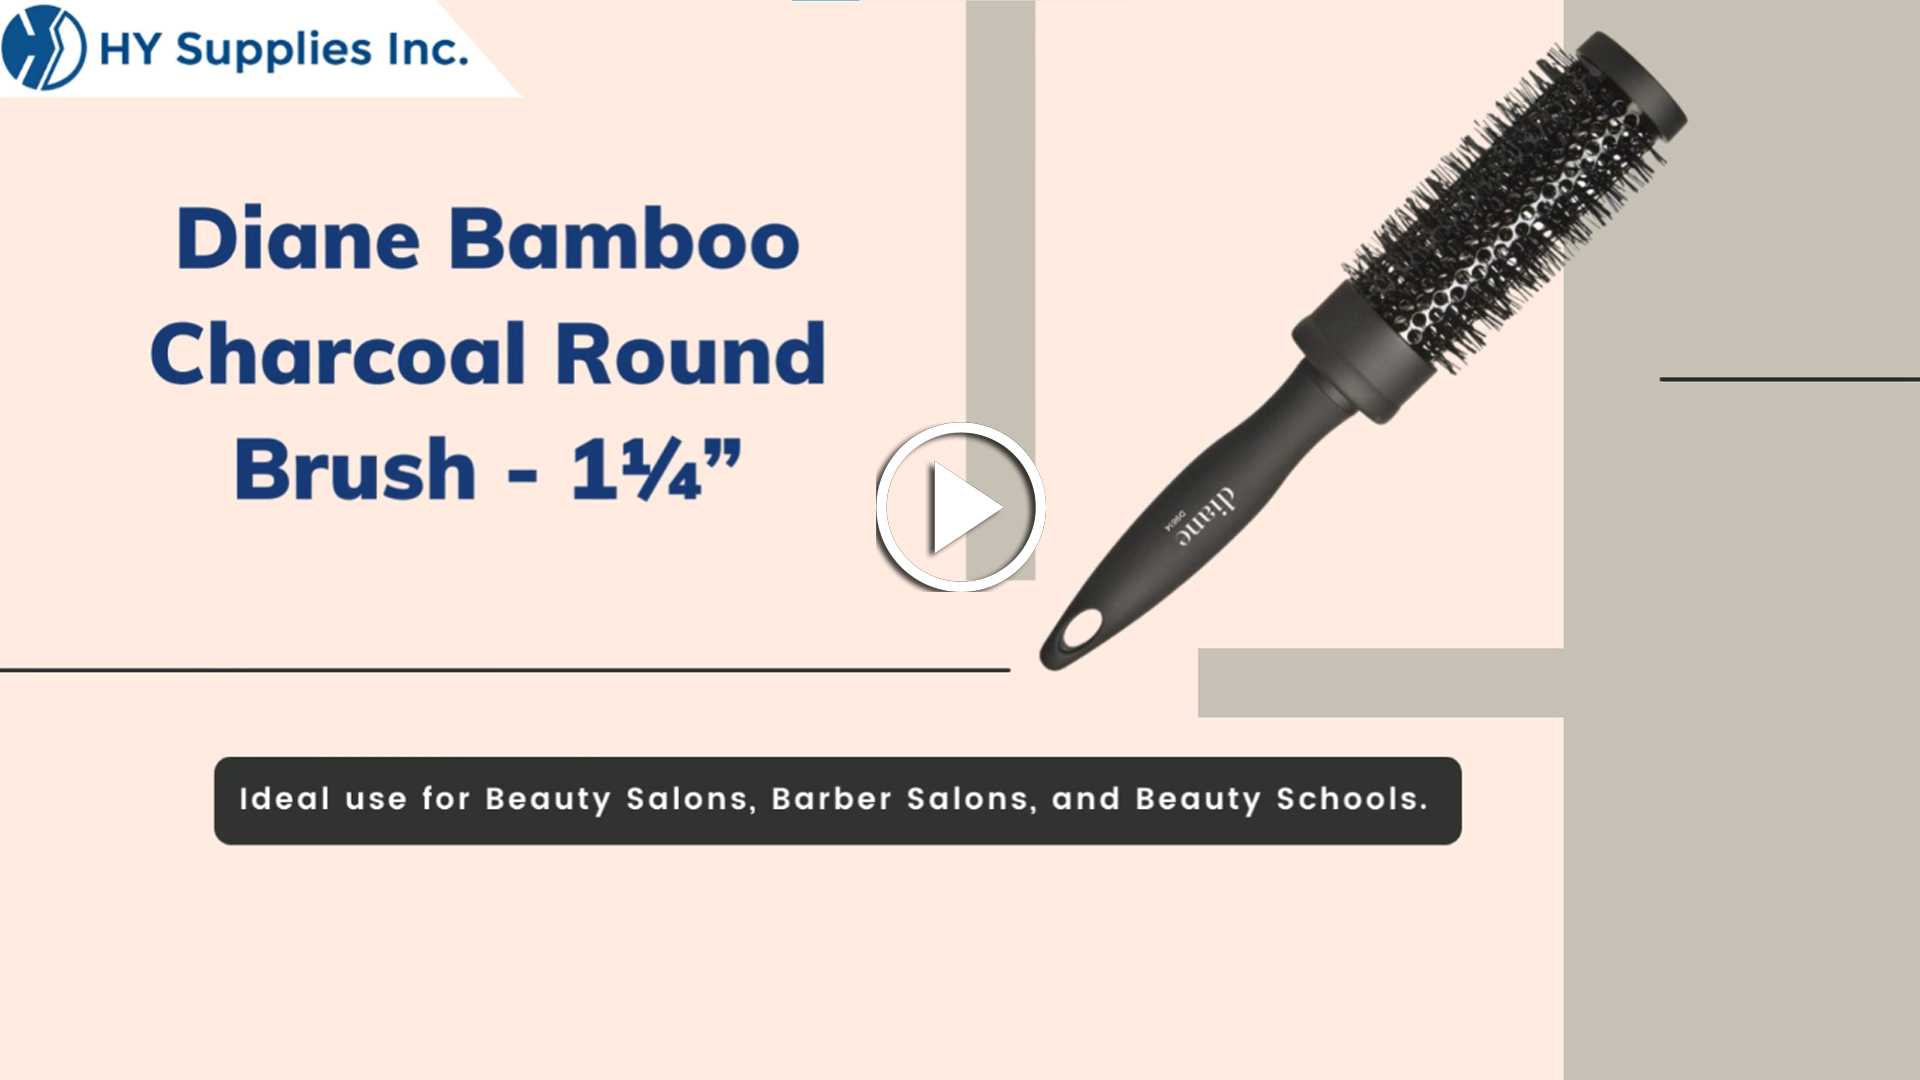 Diane Bamboo Charcoal Round Brush - 1½"